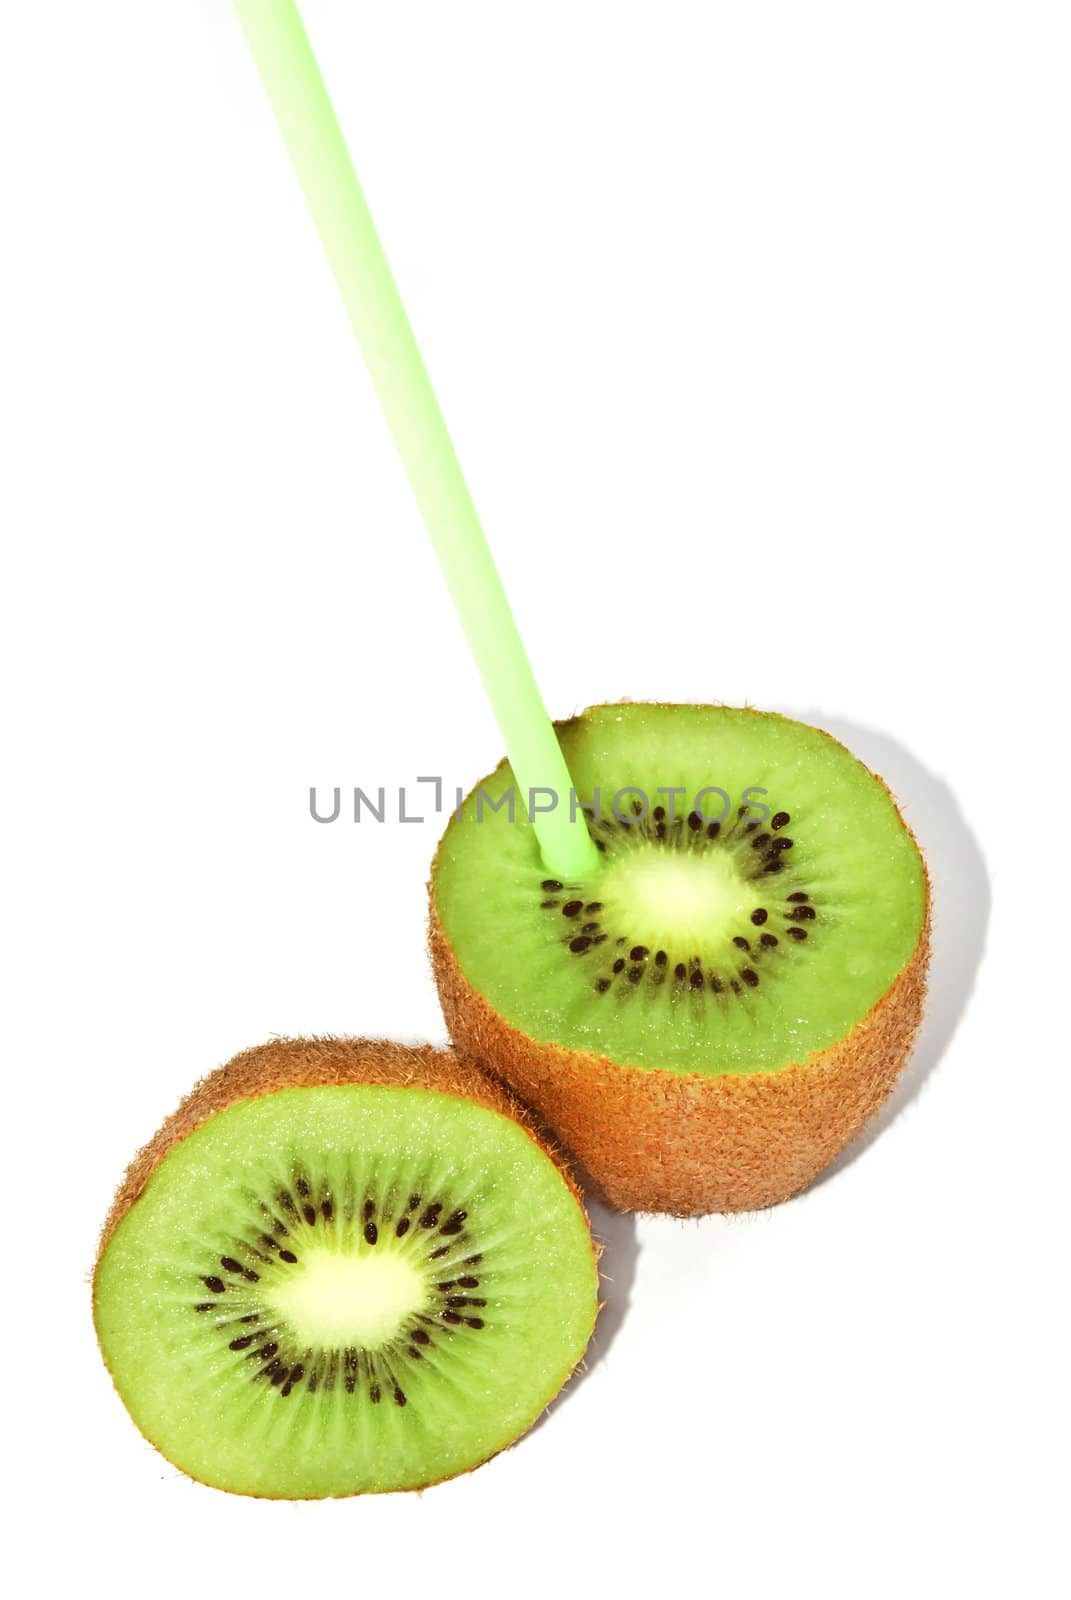 Kiwi with a straw by whitechild